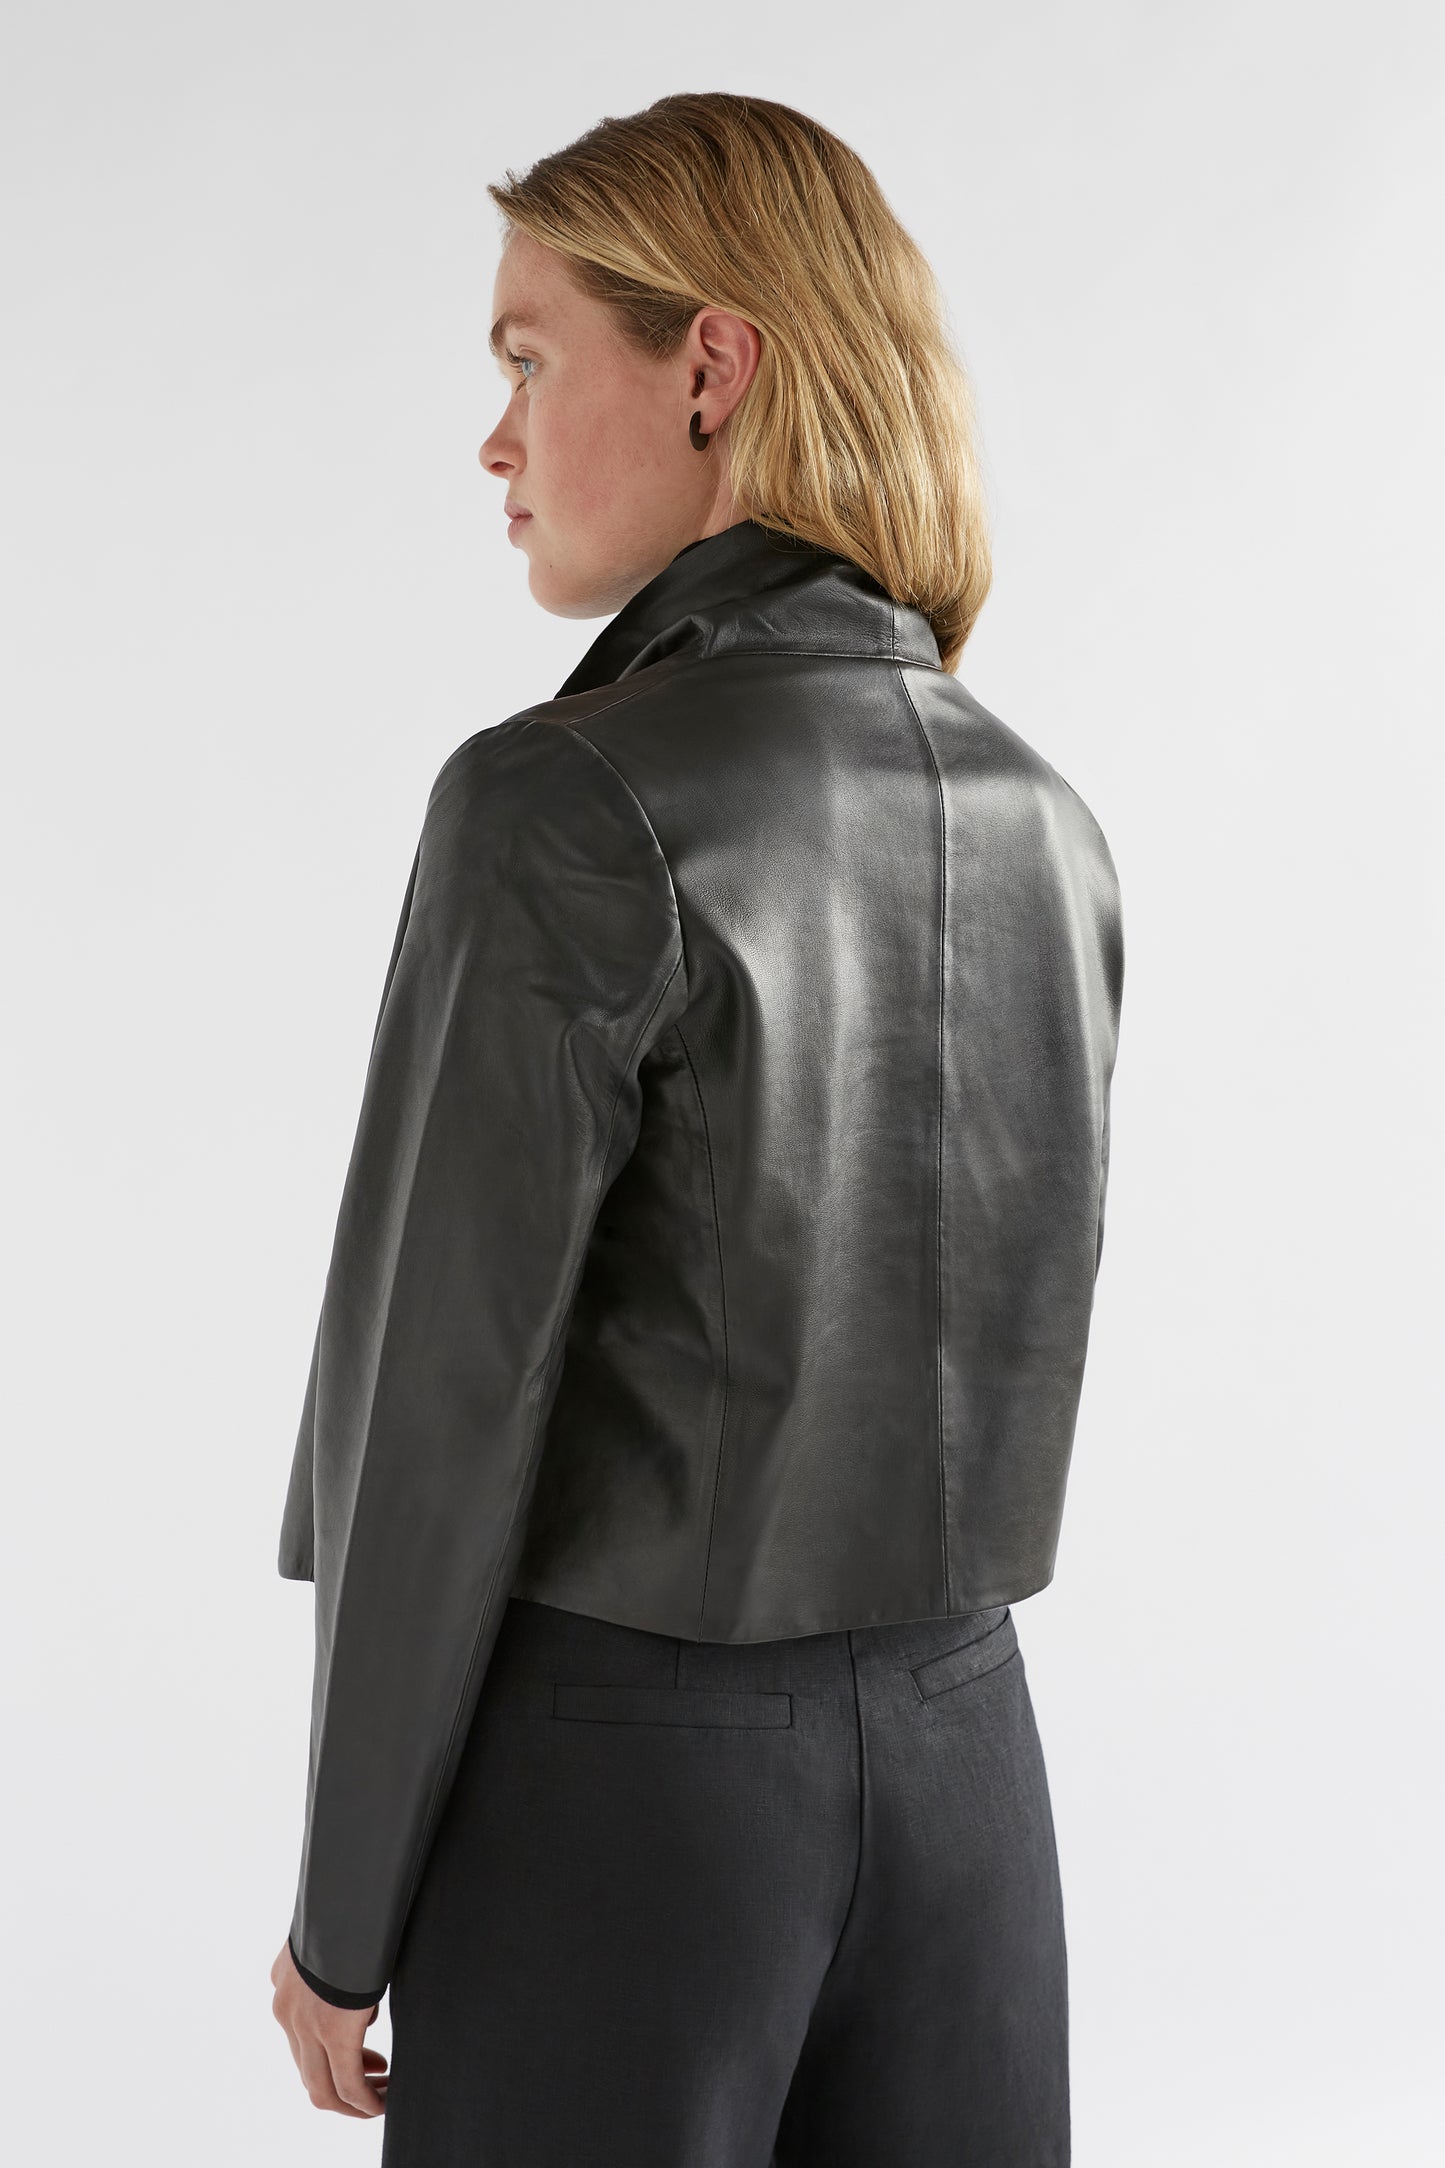 Fine Leather Lightweight Jacket Model with skivvy back Black